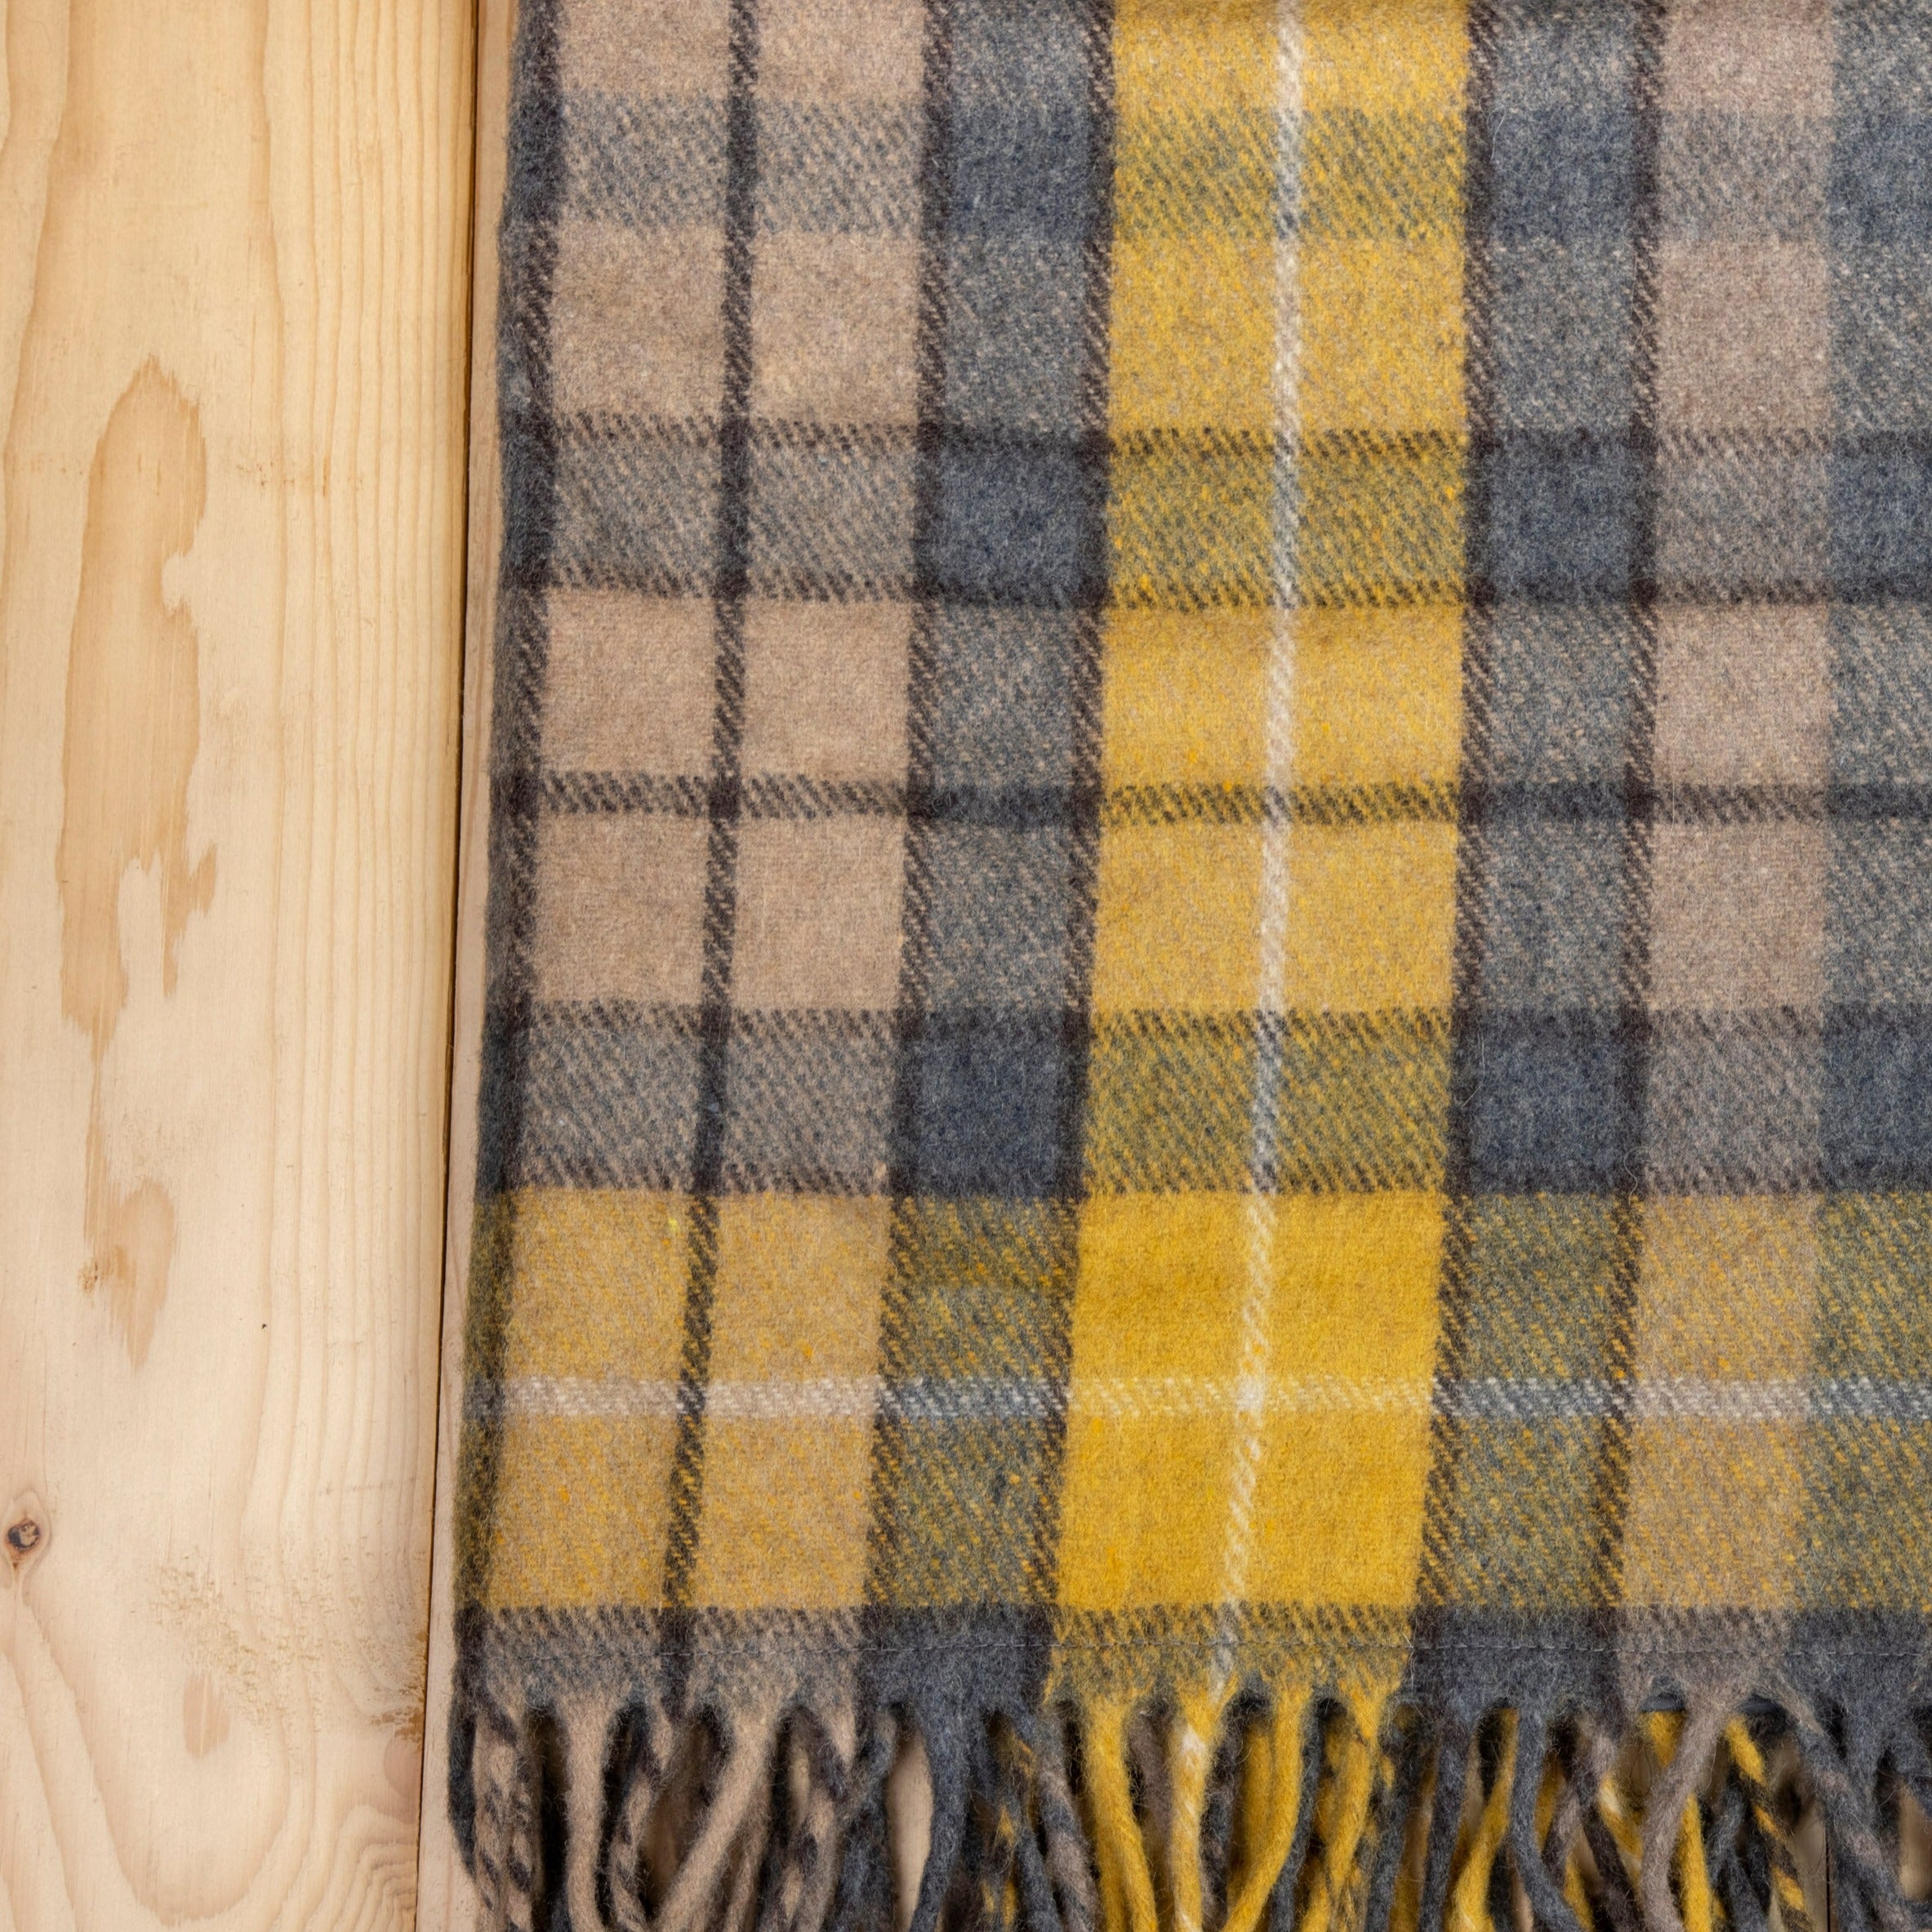 Recycled Wool Waterproof Picnic Blanket in Buchanan Natural Tartan - Brown Leather